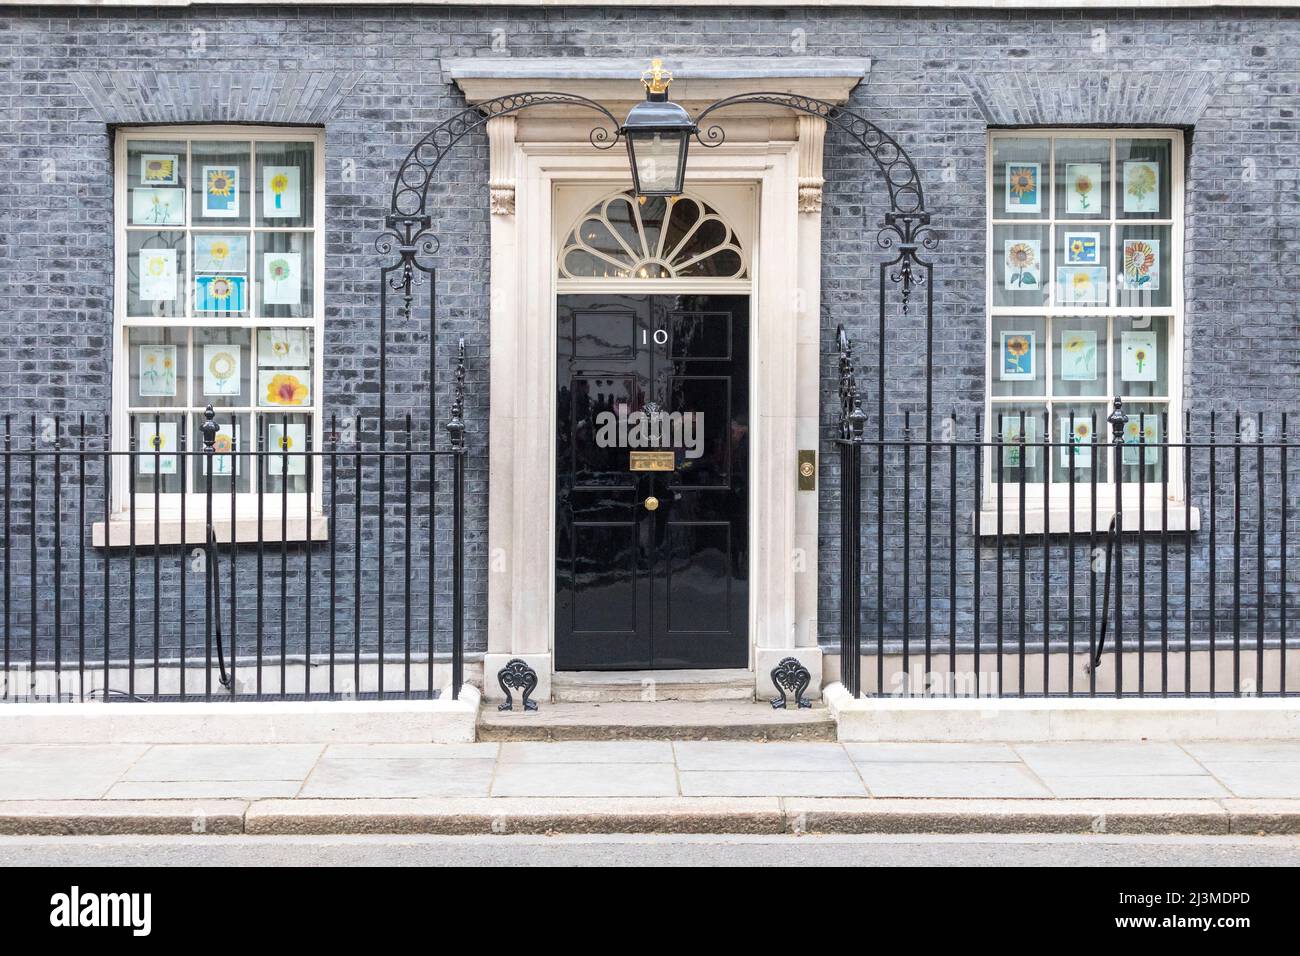 Eine allgemeine Ansicht des Eingangs zur Downing Street Nr. 10 vom Pressestift aus. Bilder aufgenommen am 8.. April 2022. © Belinda Jiao jiao.bilin@gmail.co Stockfoto